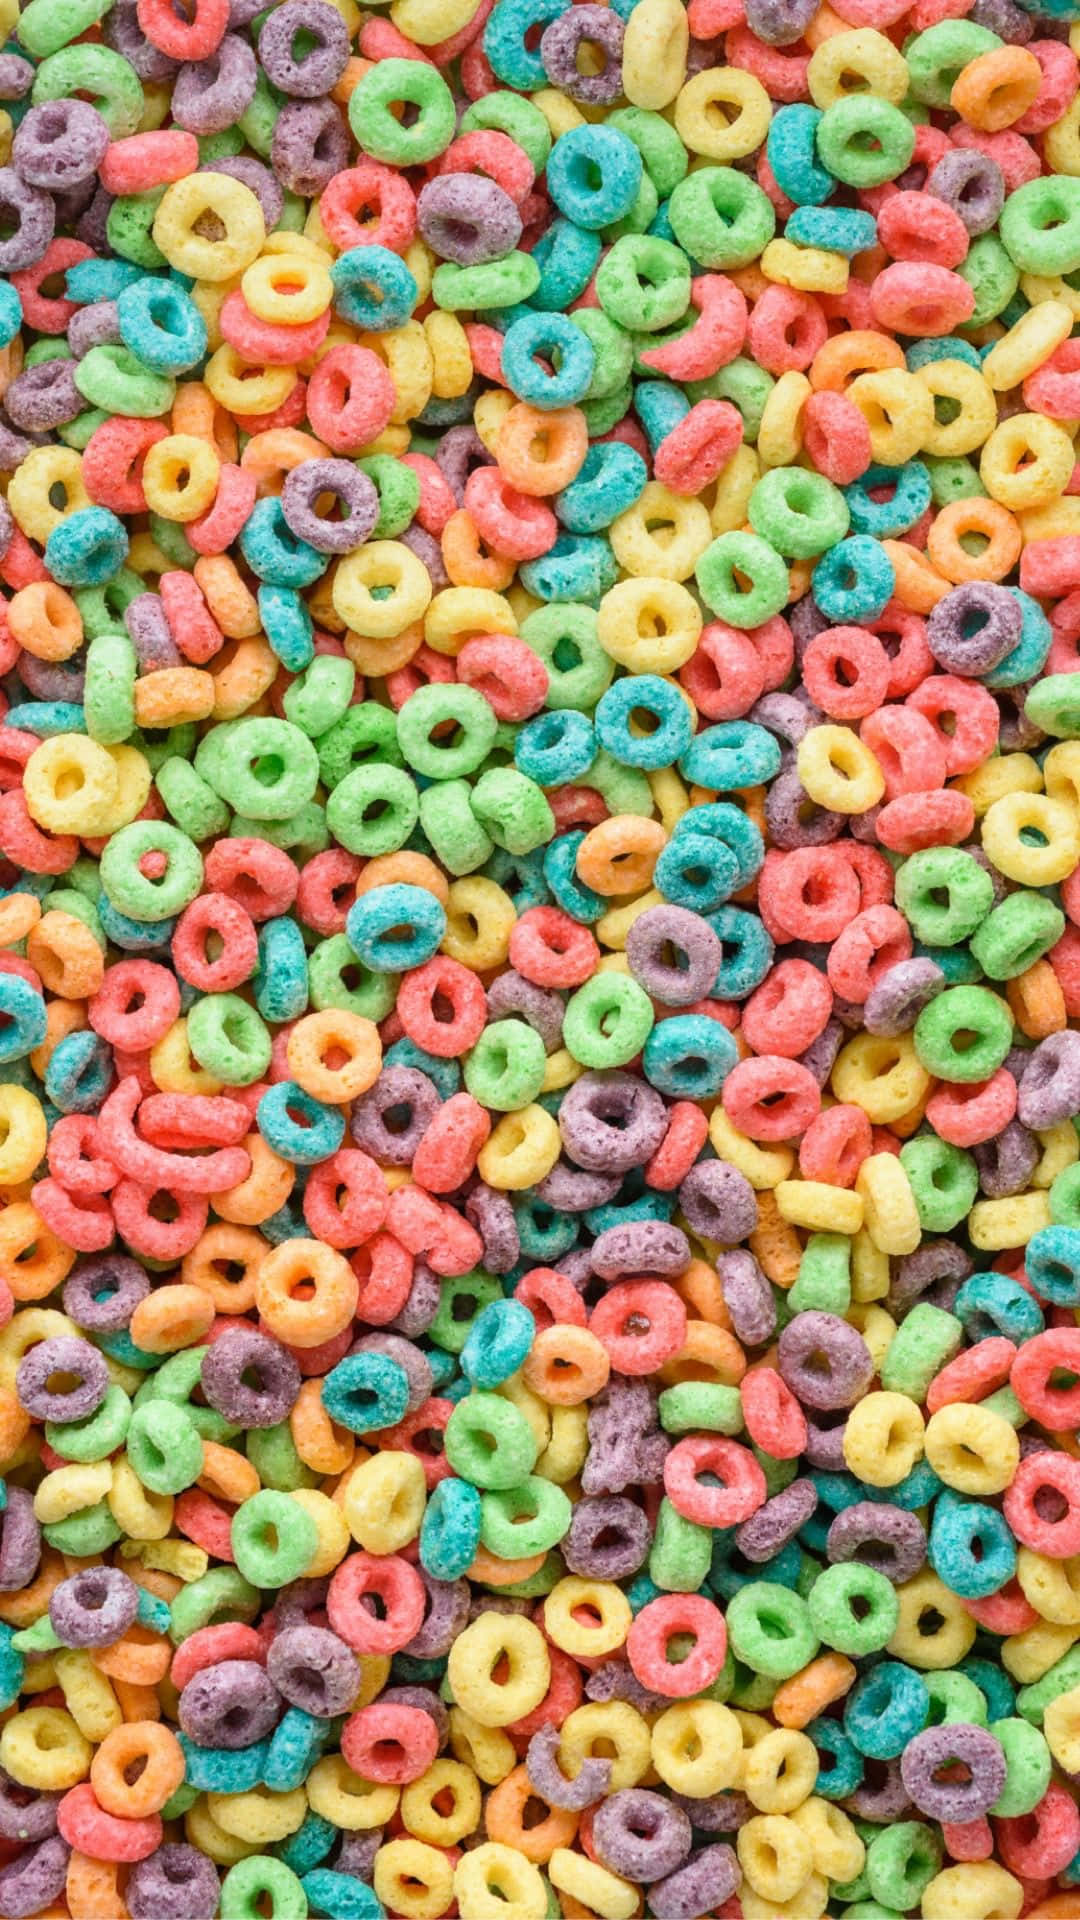 Anéiscoloridos De Cereal Empilhados. Papel de Parede